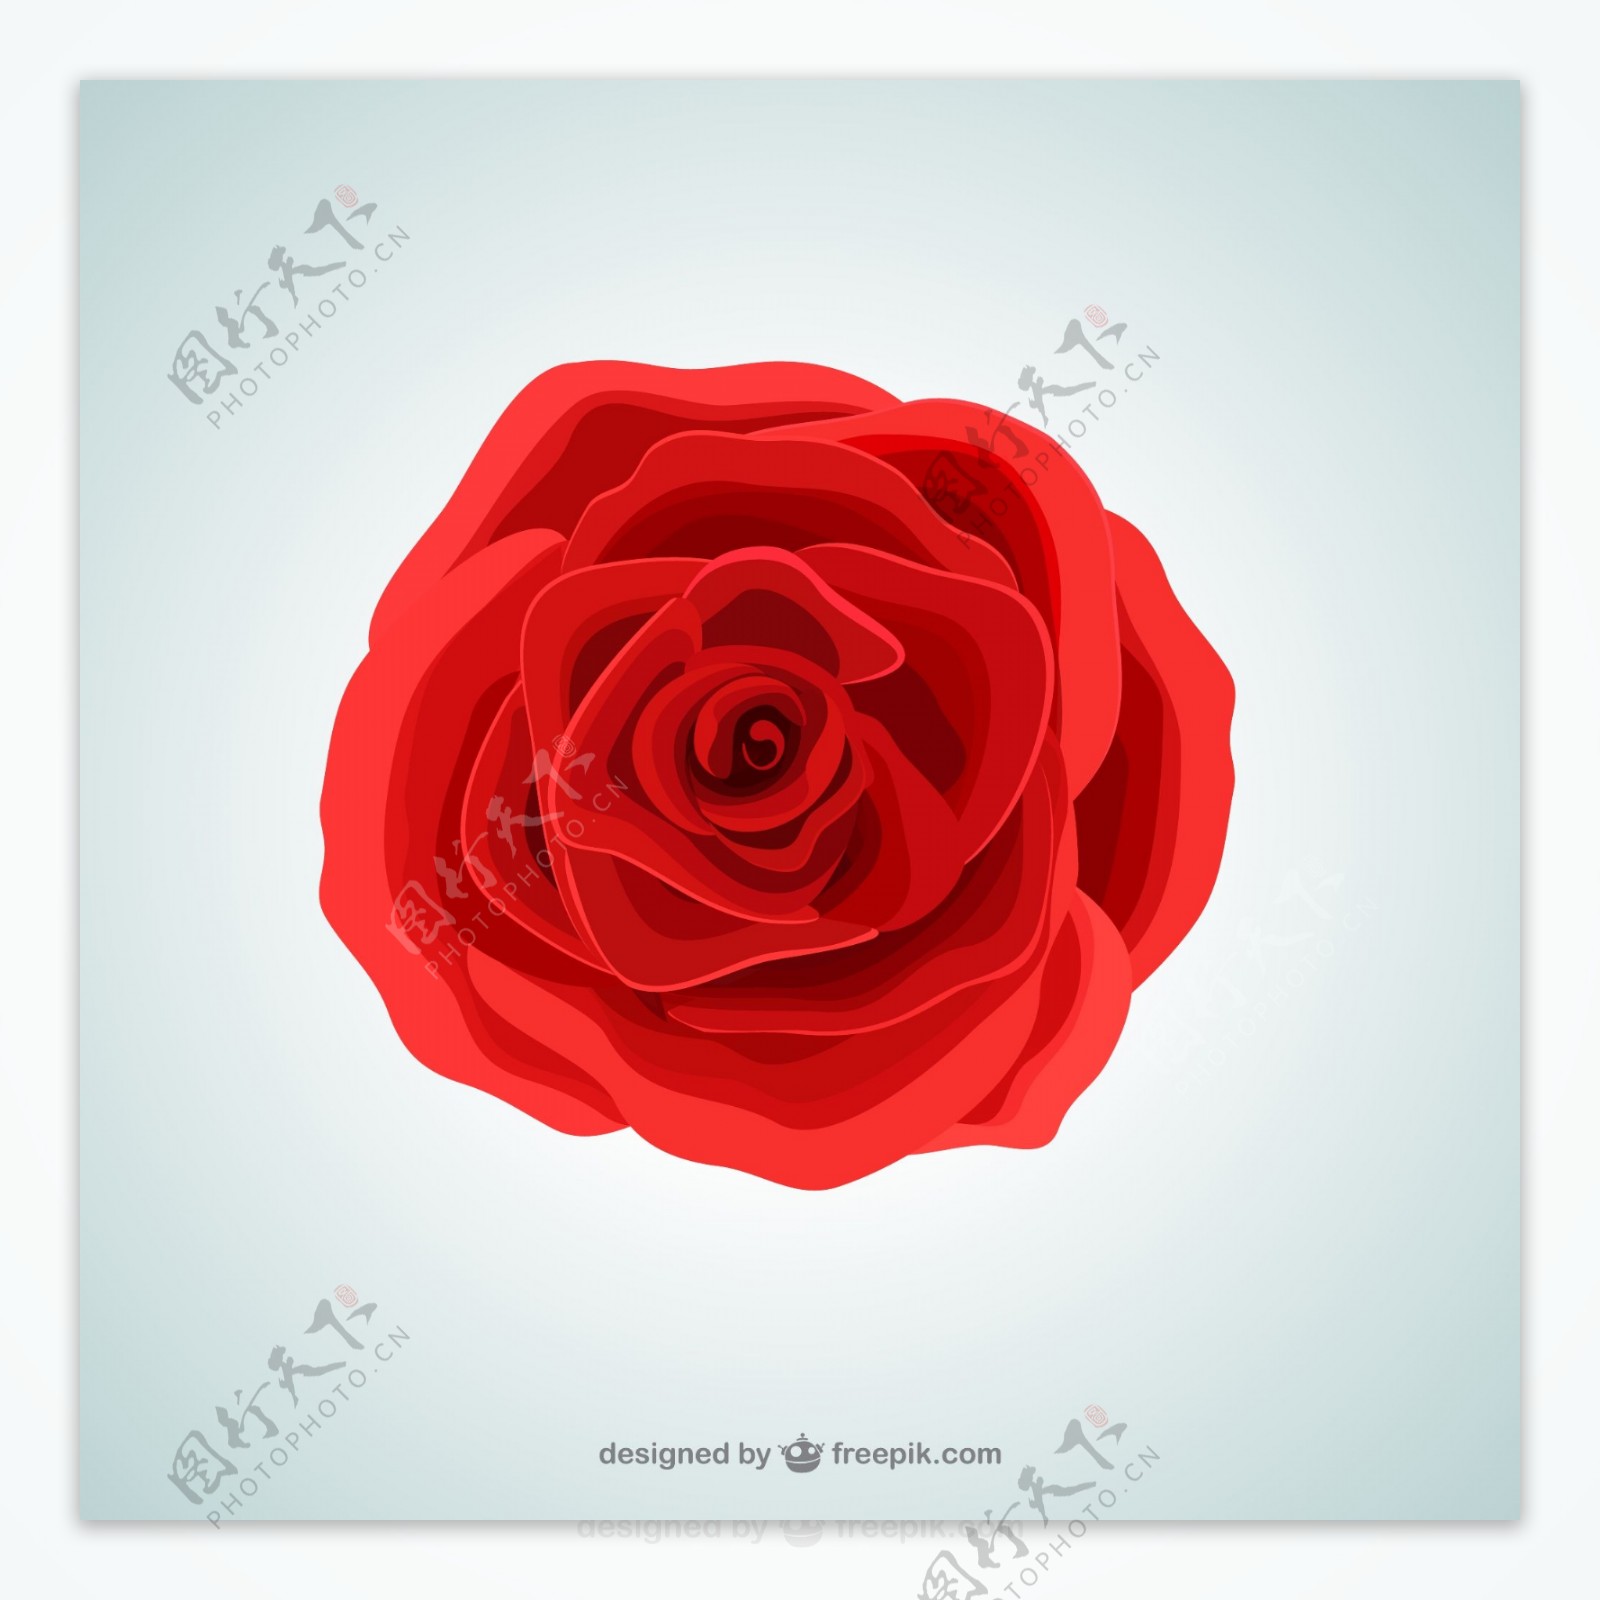 红色玫瑰花朵矢量素材.